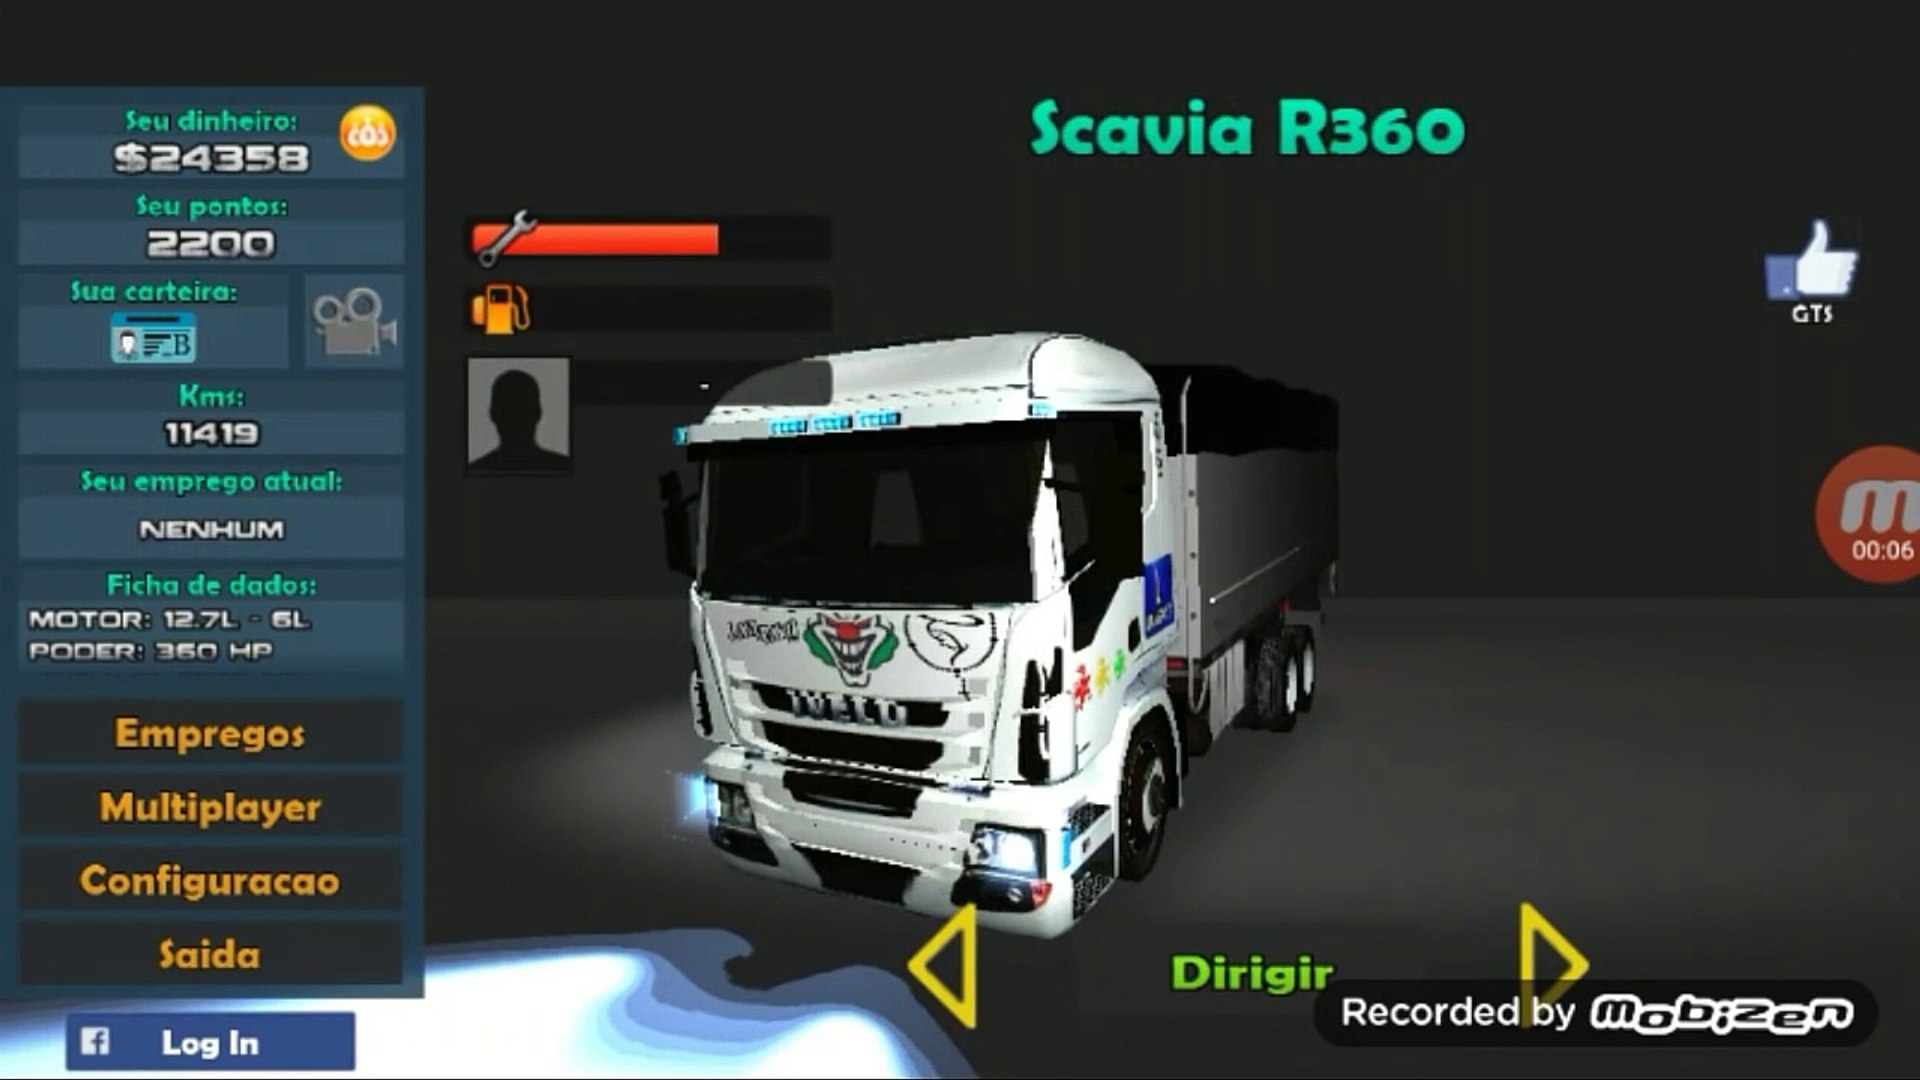 Grand Truck Simulator updated - Grand Truck Simulator